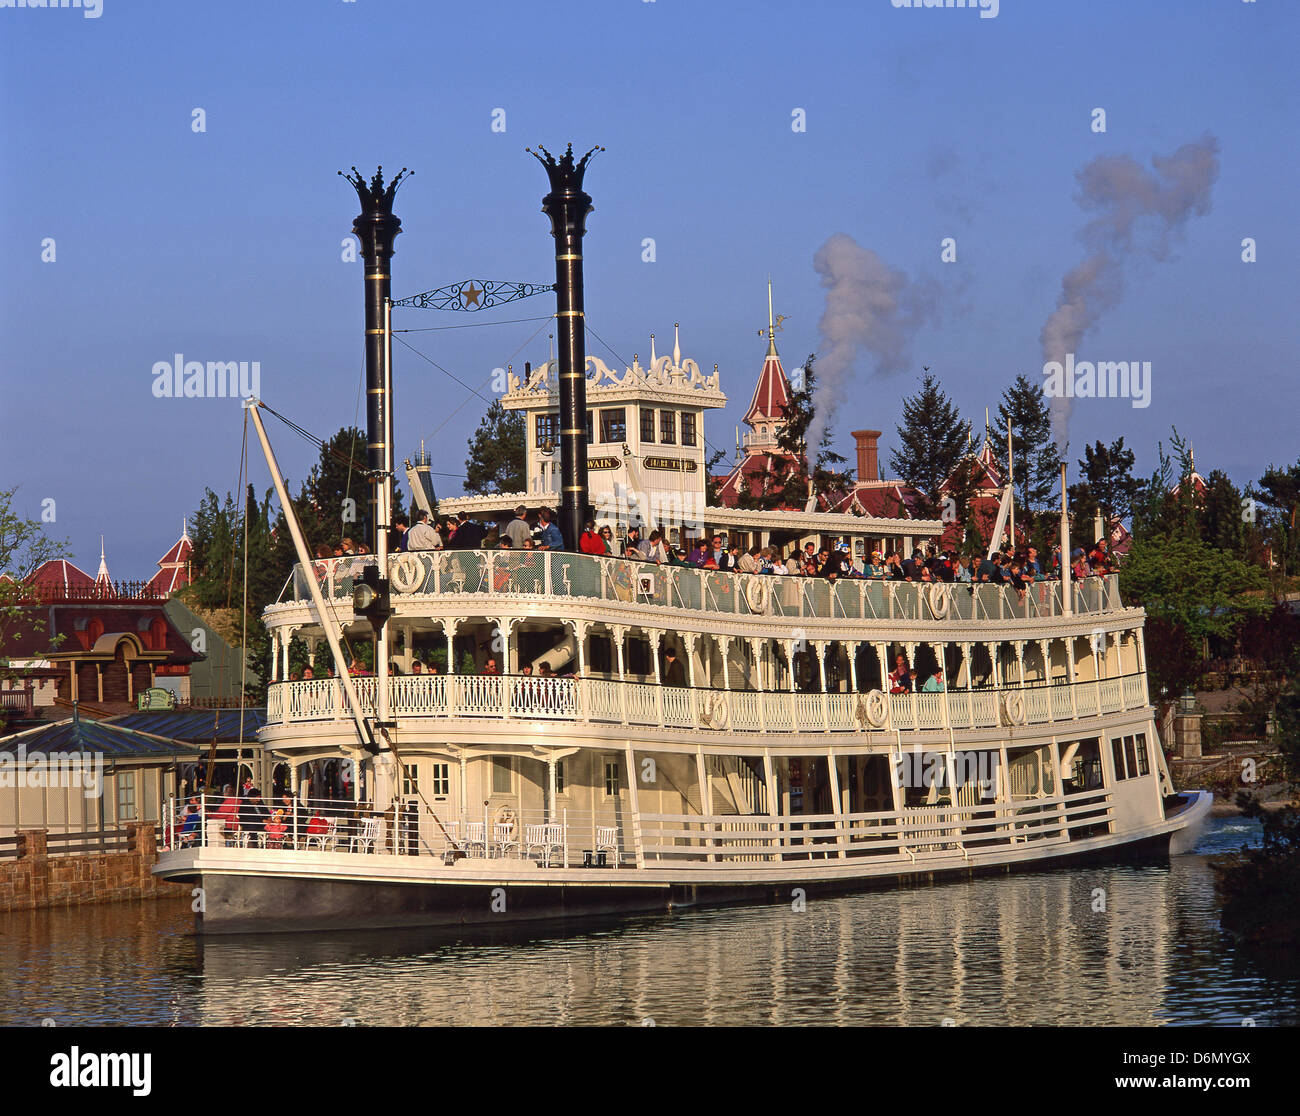 Mark Twain battello a vapore, Frontierland, Disneyland Paris theme park, Marne-la-Vallée, Île-de-France, Francia Foto Stock